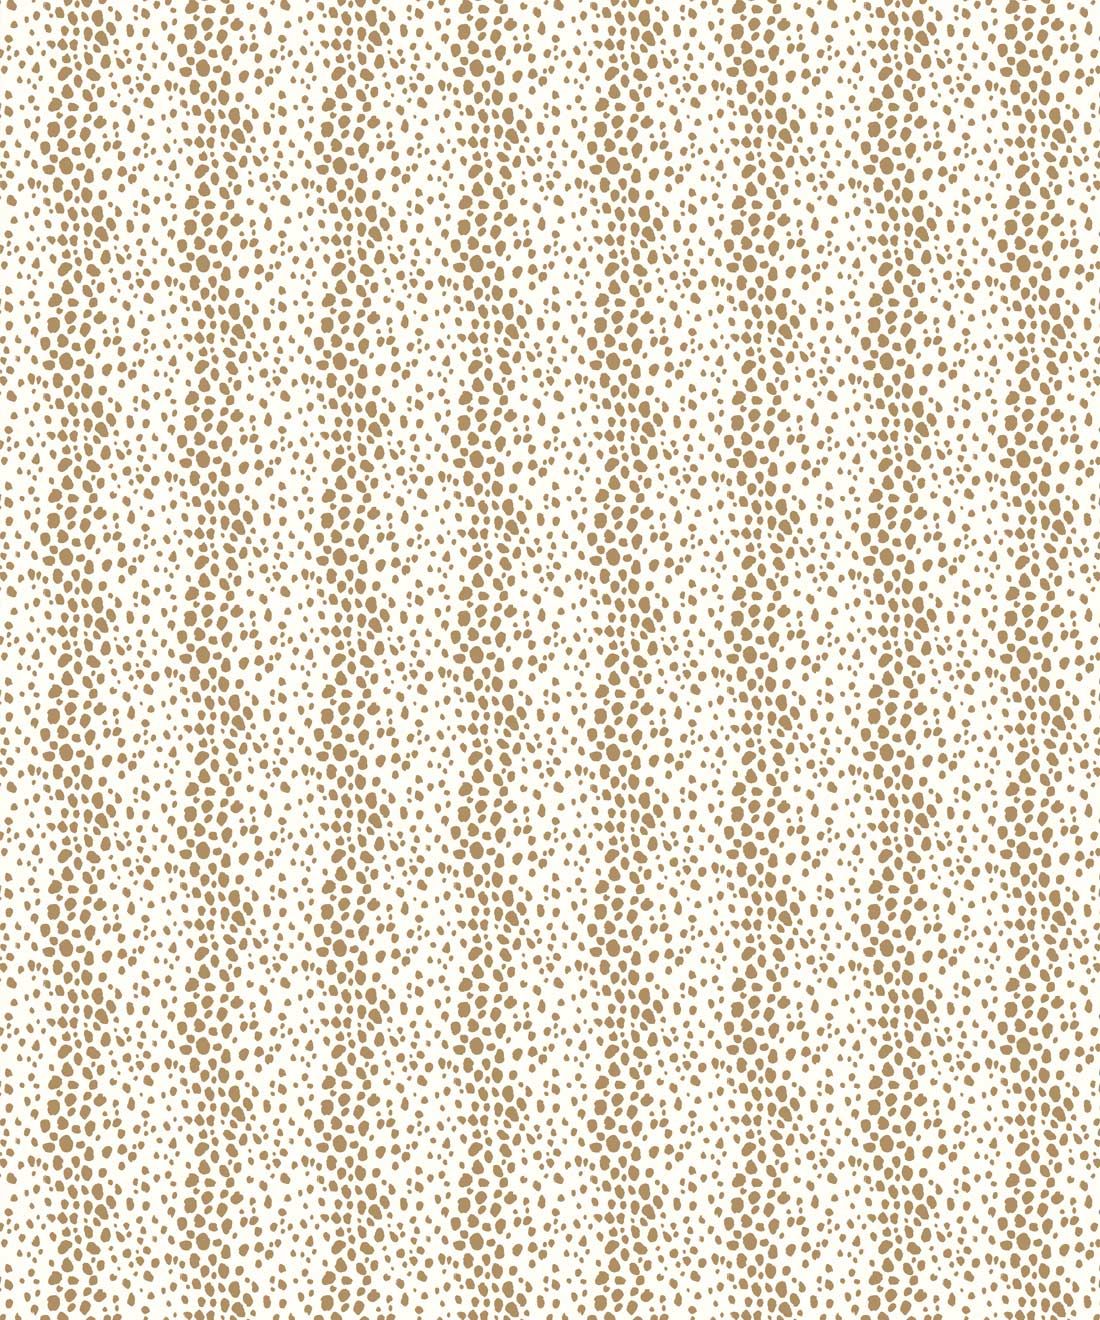 Park Avenue Petite Wallpaper • Dianne Bergeron • Animal Print Wallpaper • Animal Spots Wallpaper • Camel • Swatch